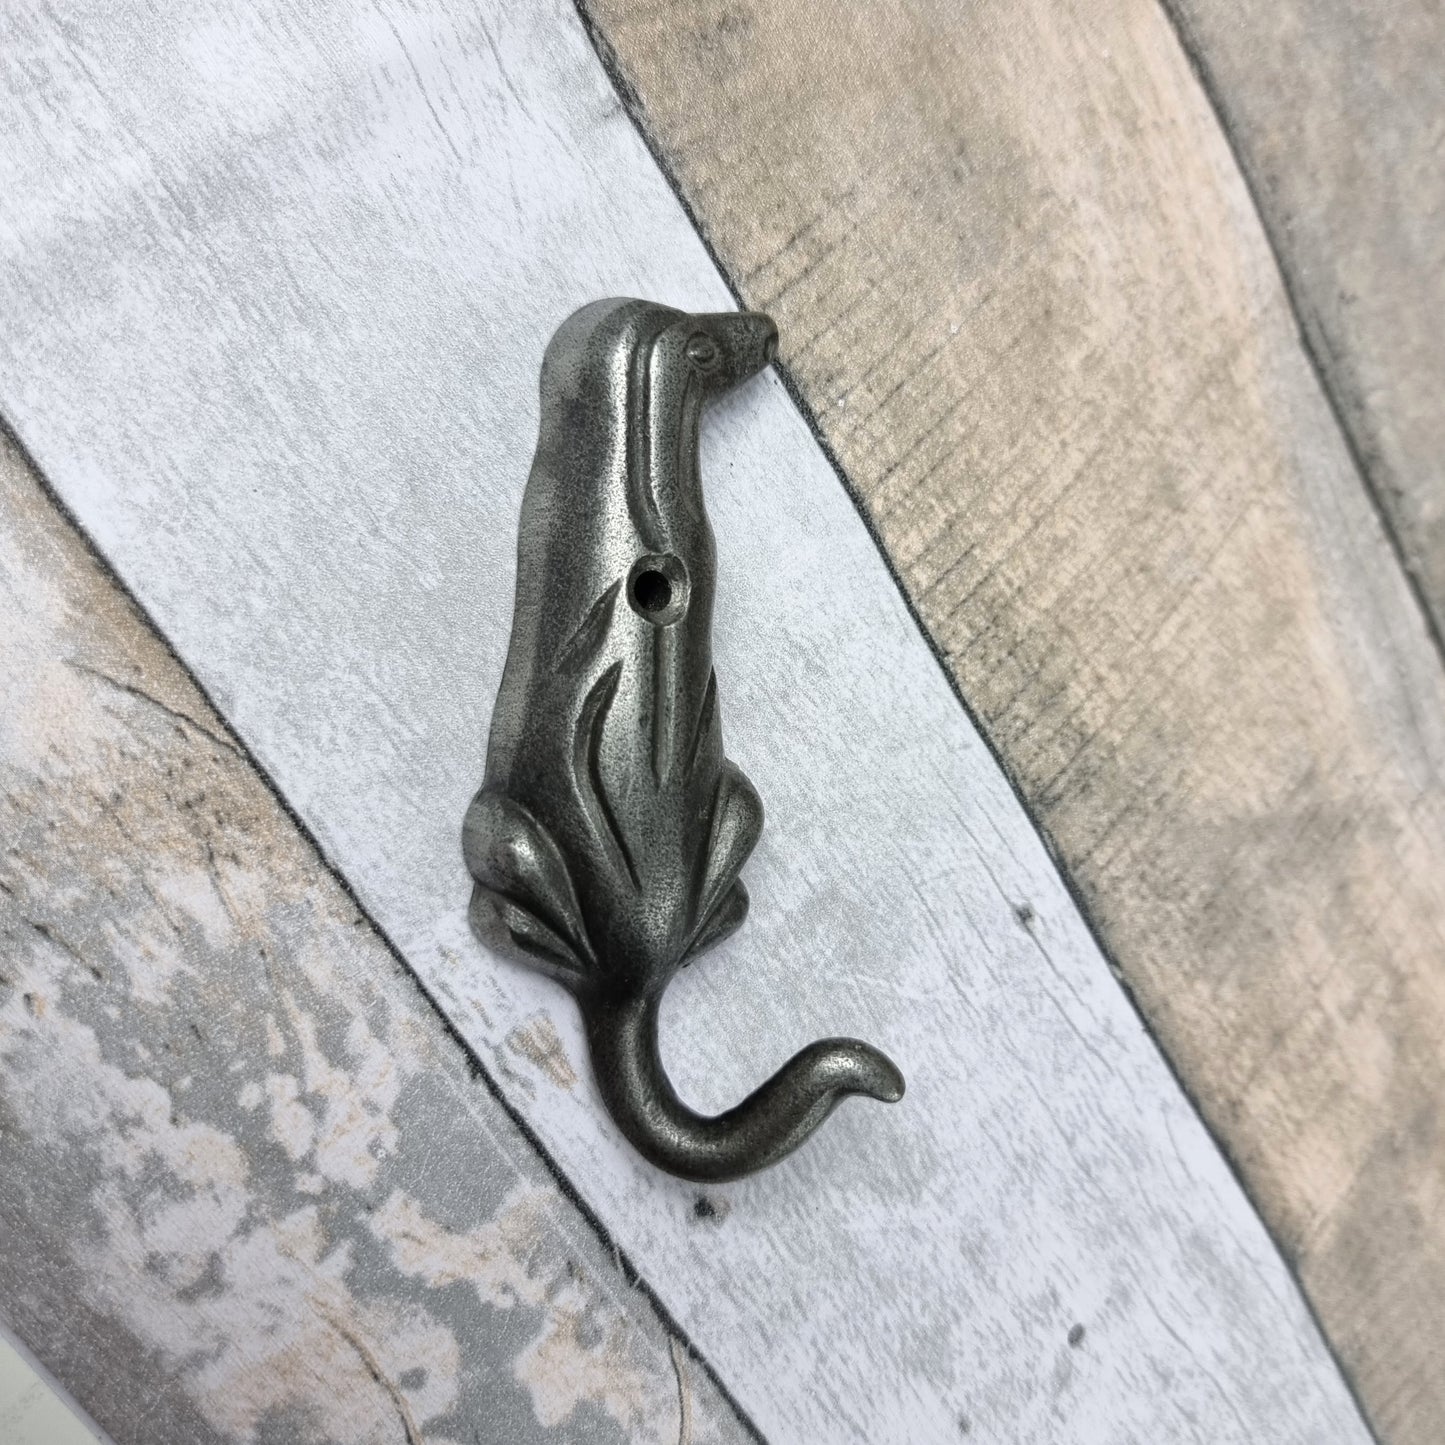 Dog Tail Coat Hook - Antique Iron